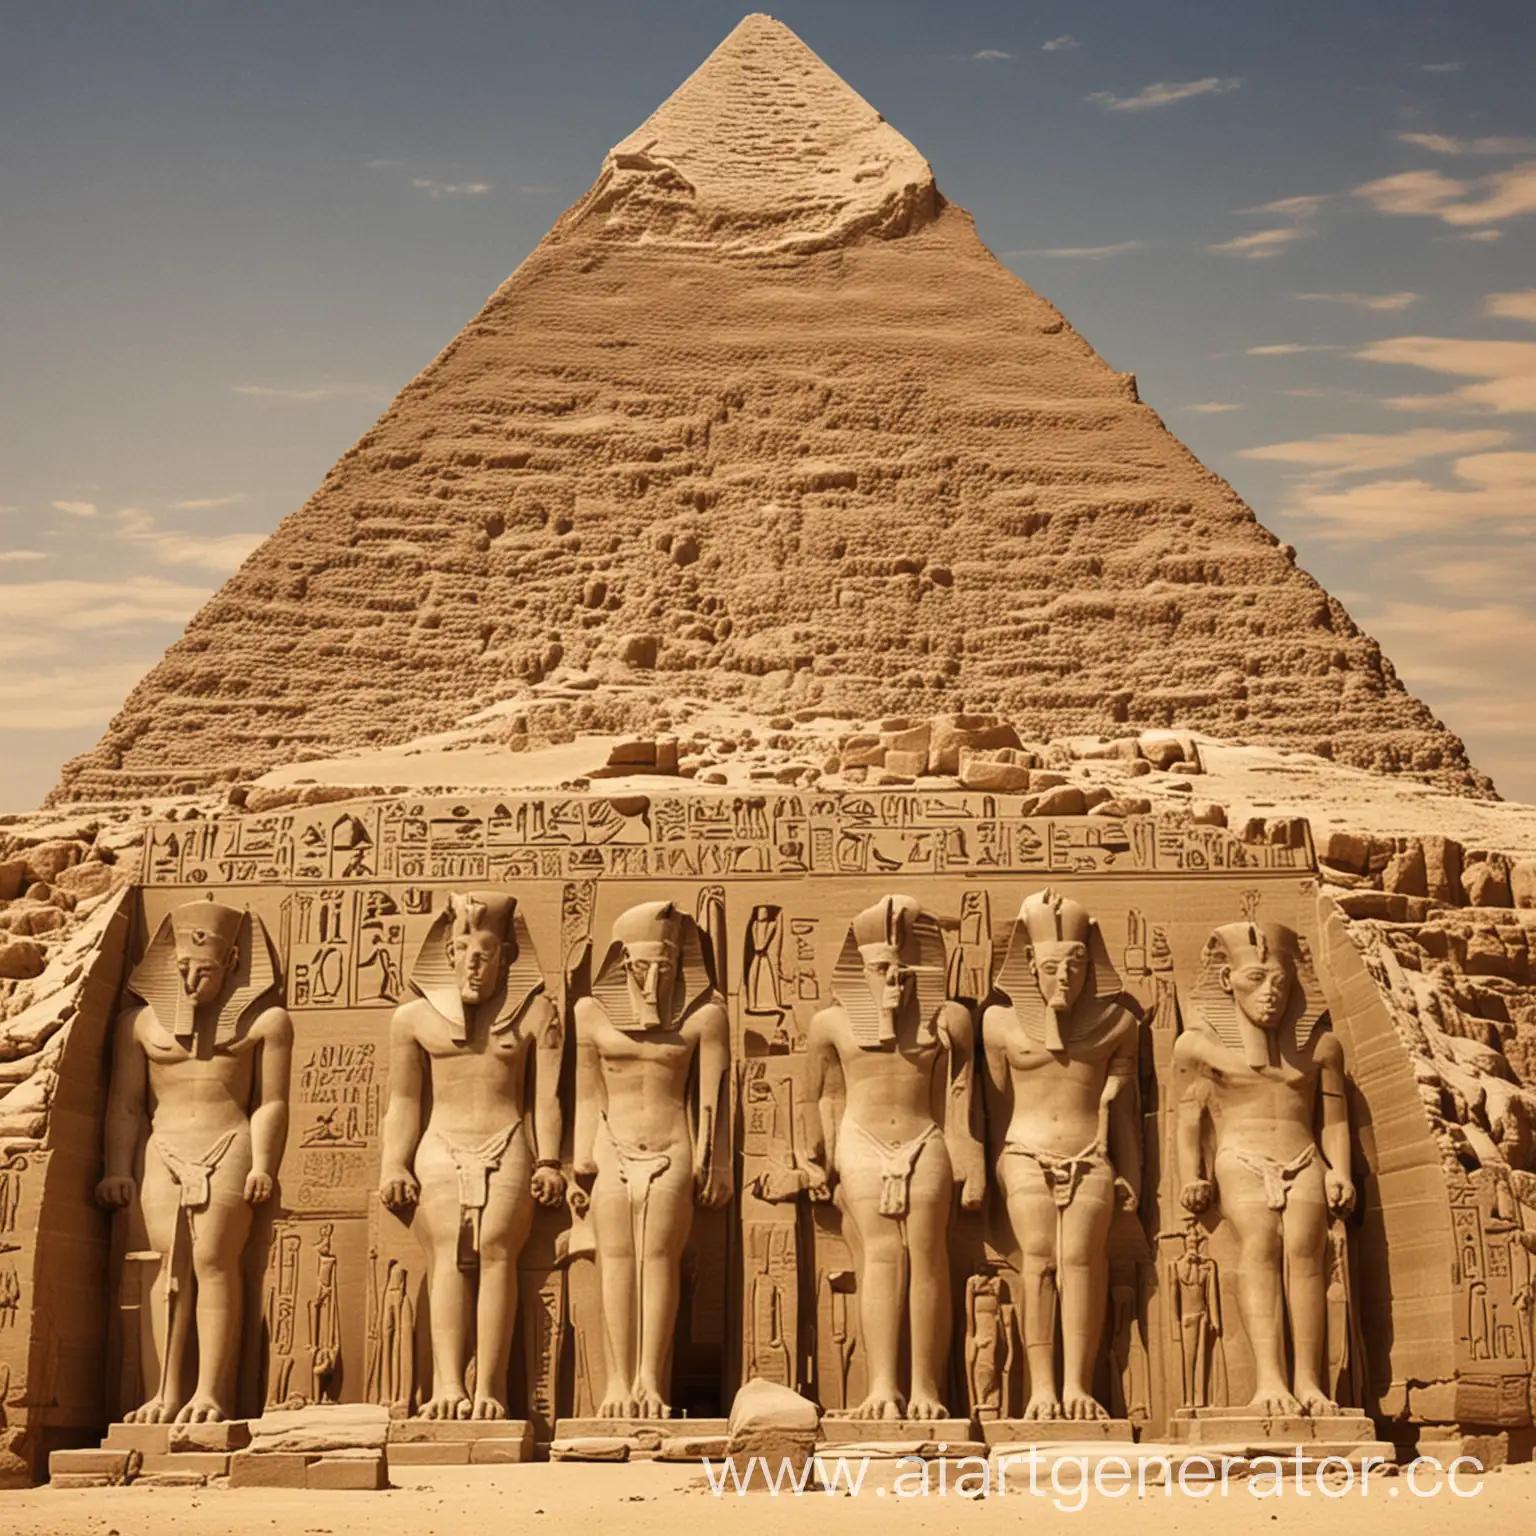 псевдо научная теория о египте
